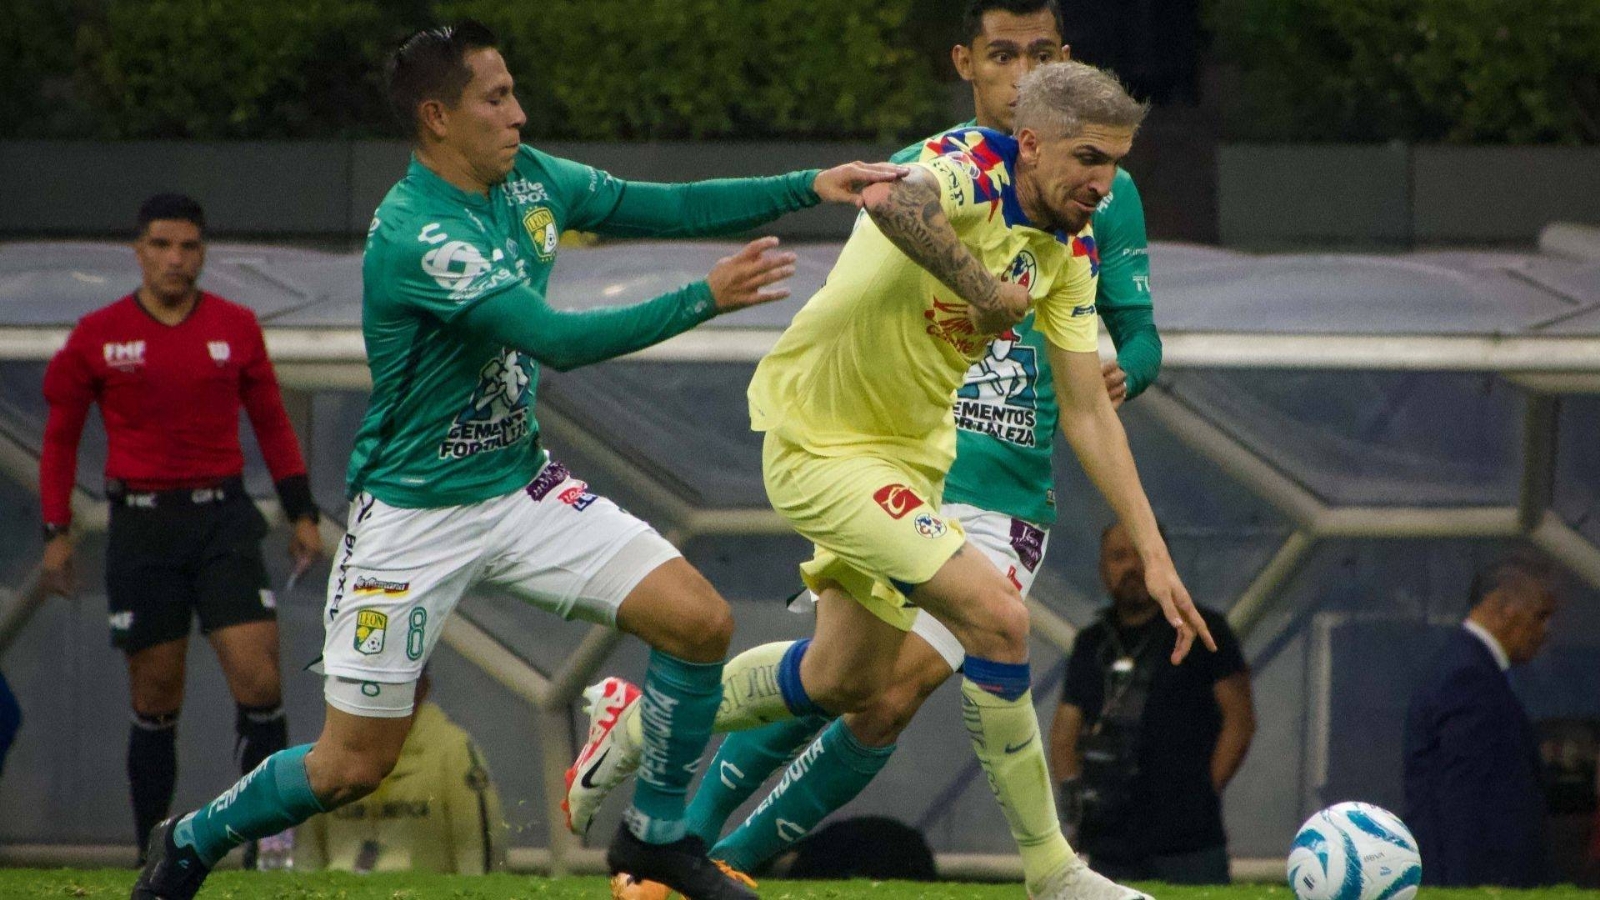 Liguila Liga MX: América y León empatan en el juego de ida de la semifinal del futbol mexicano